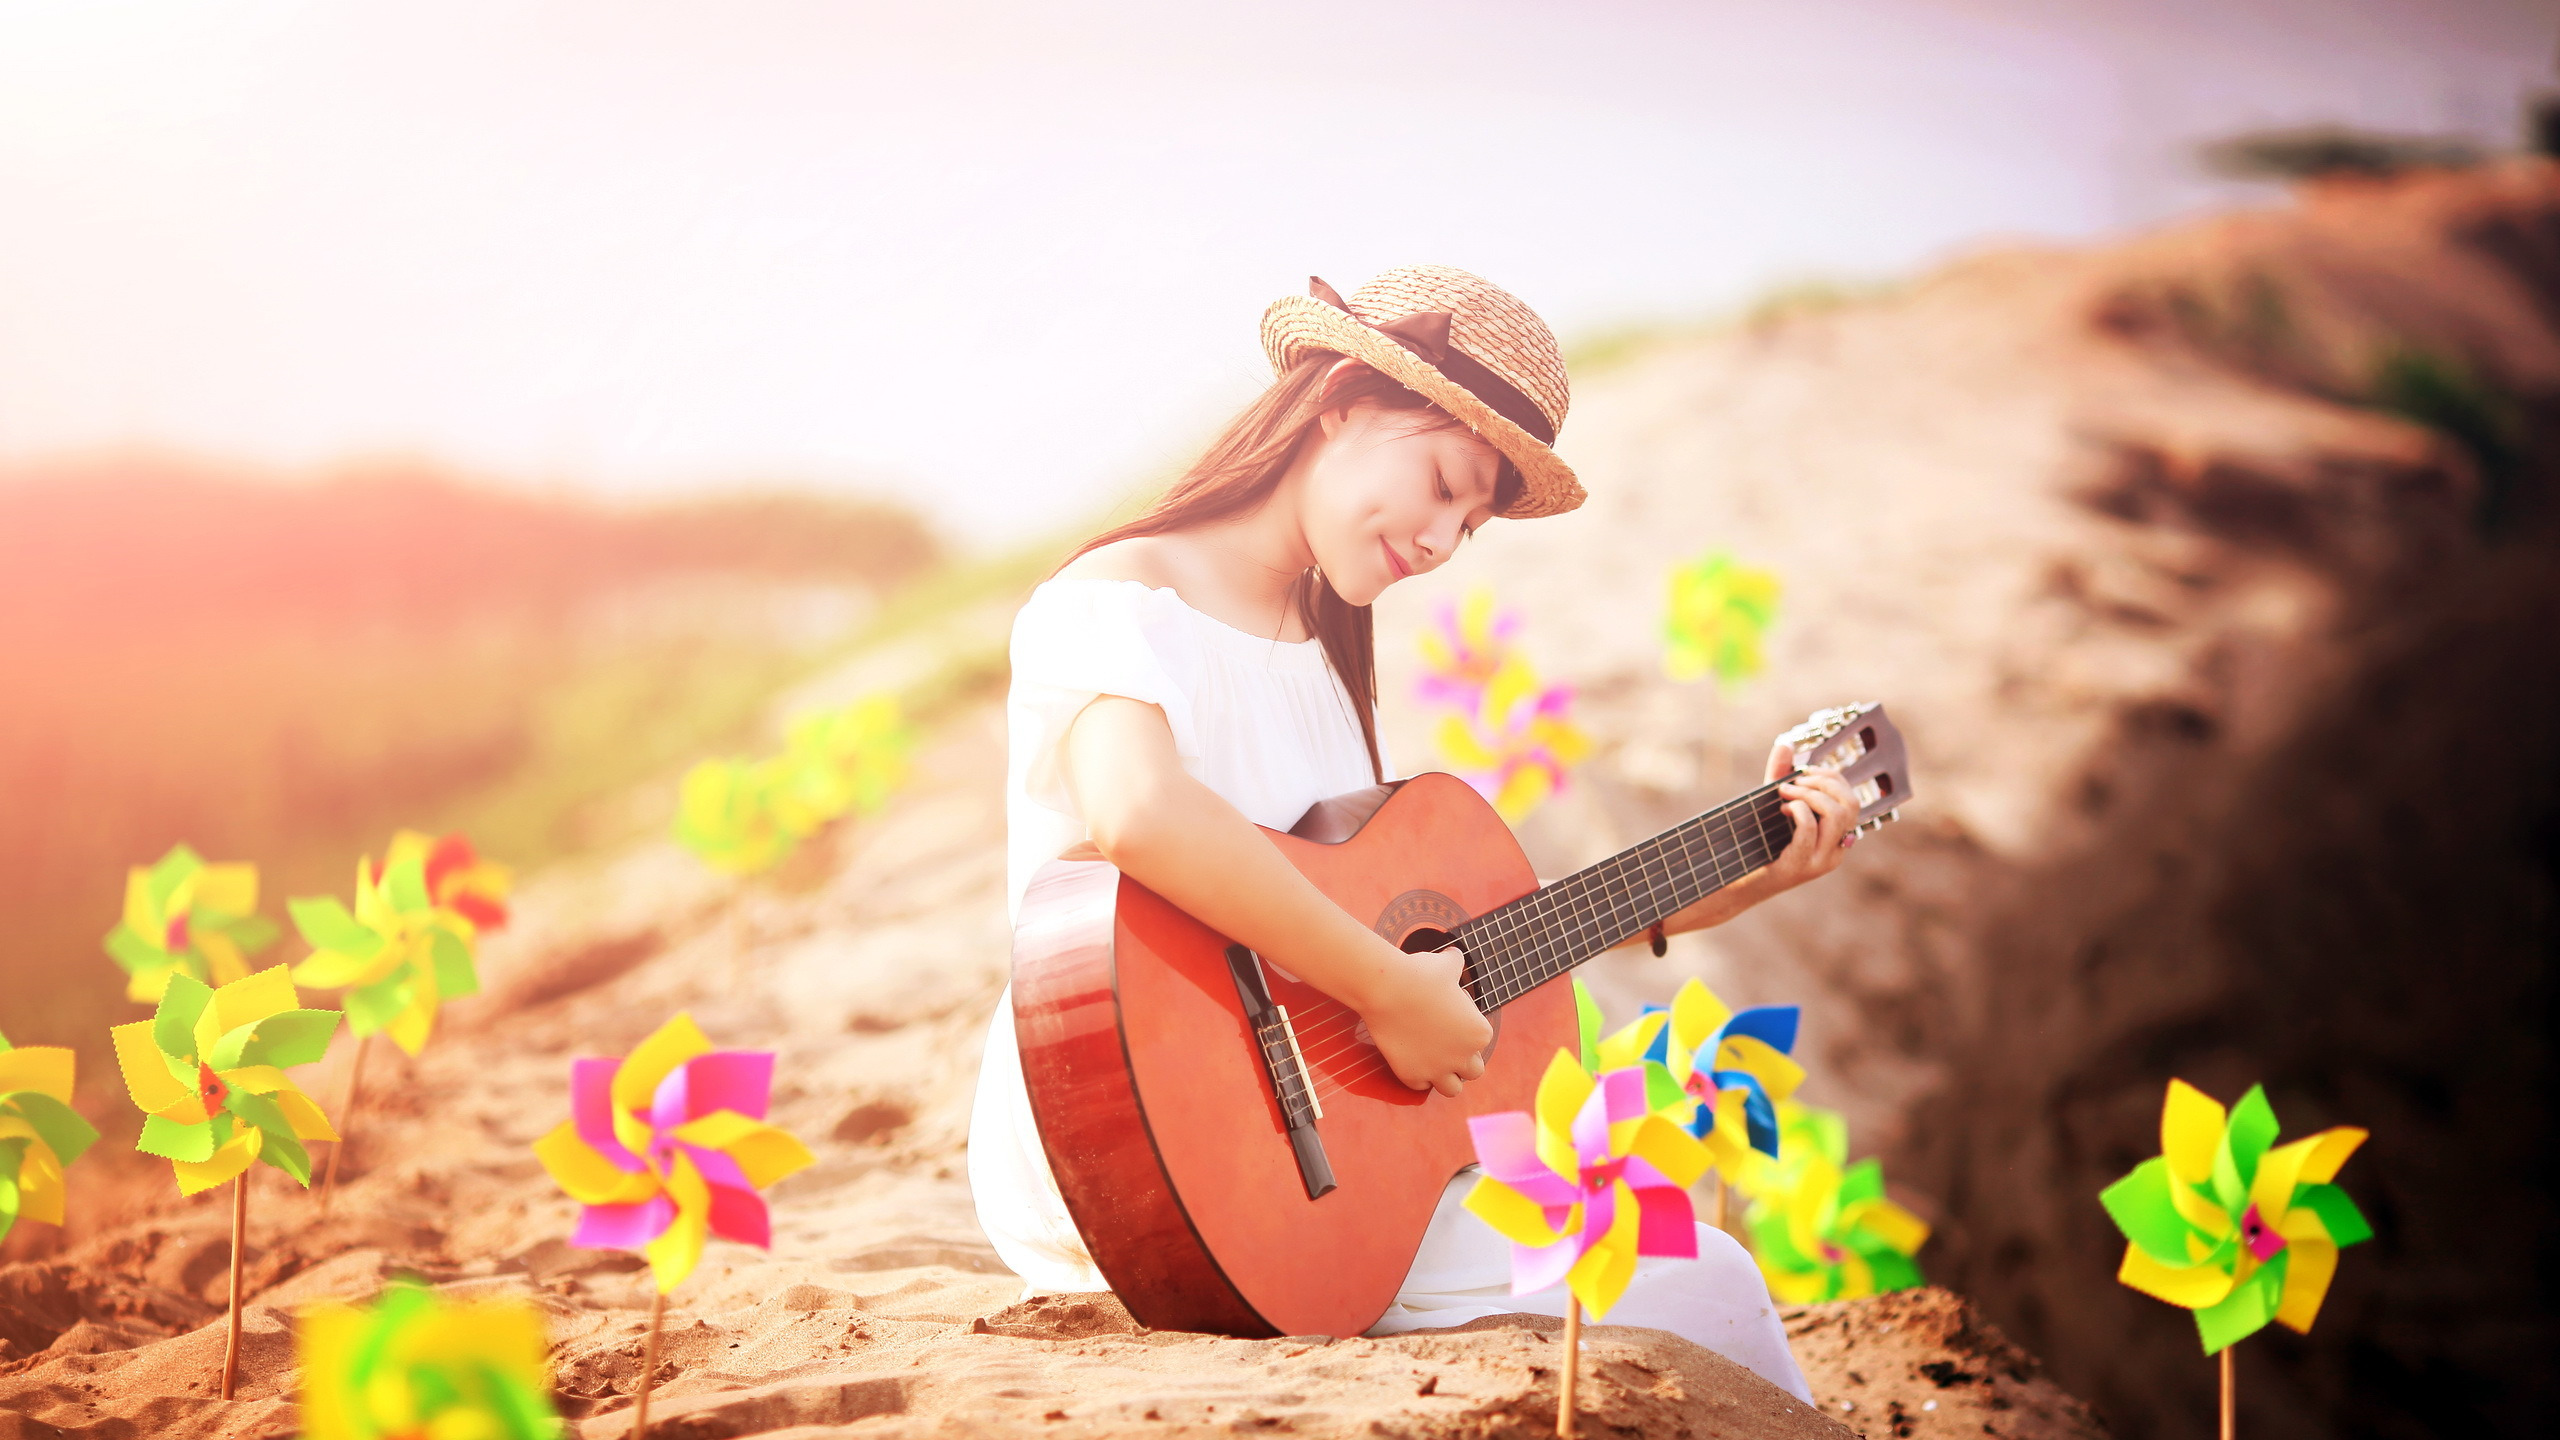 Музыка хорошая красивая. Фотосессия с гитарой на природе. Девушка с гитарой на природе. Музыкальная фотосессия. Летнее настроение.